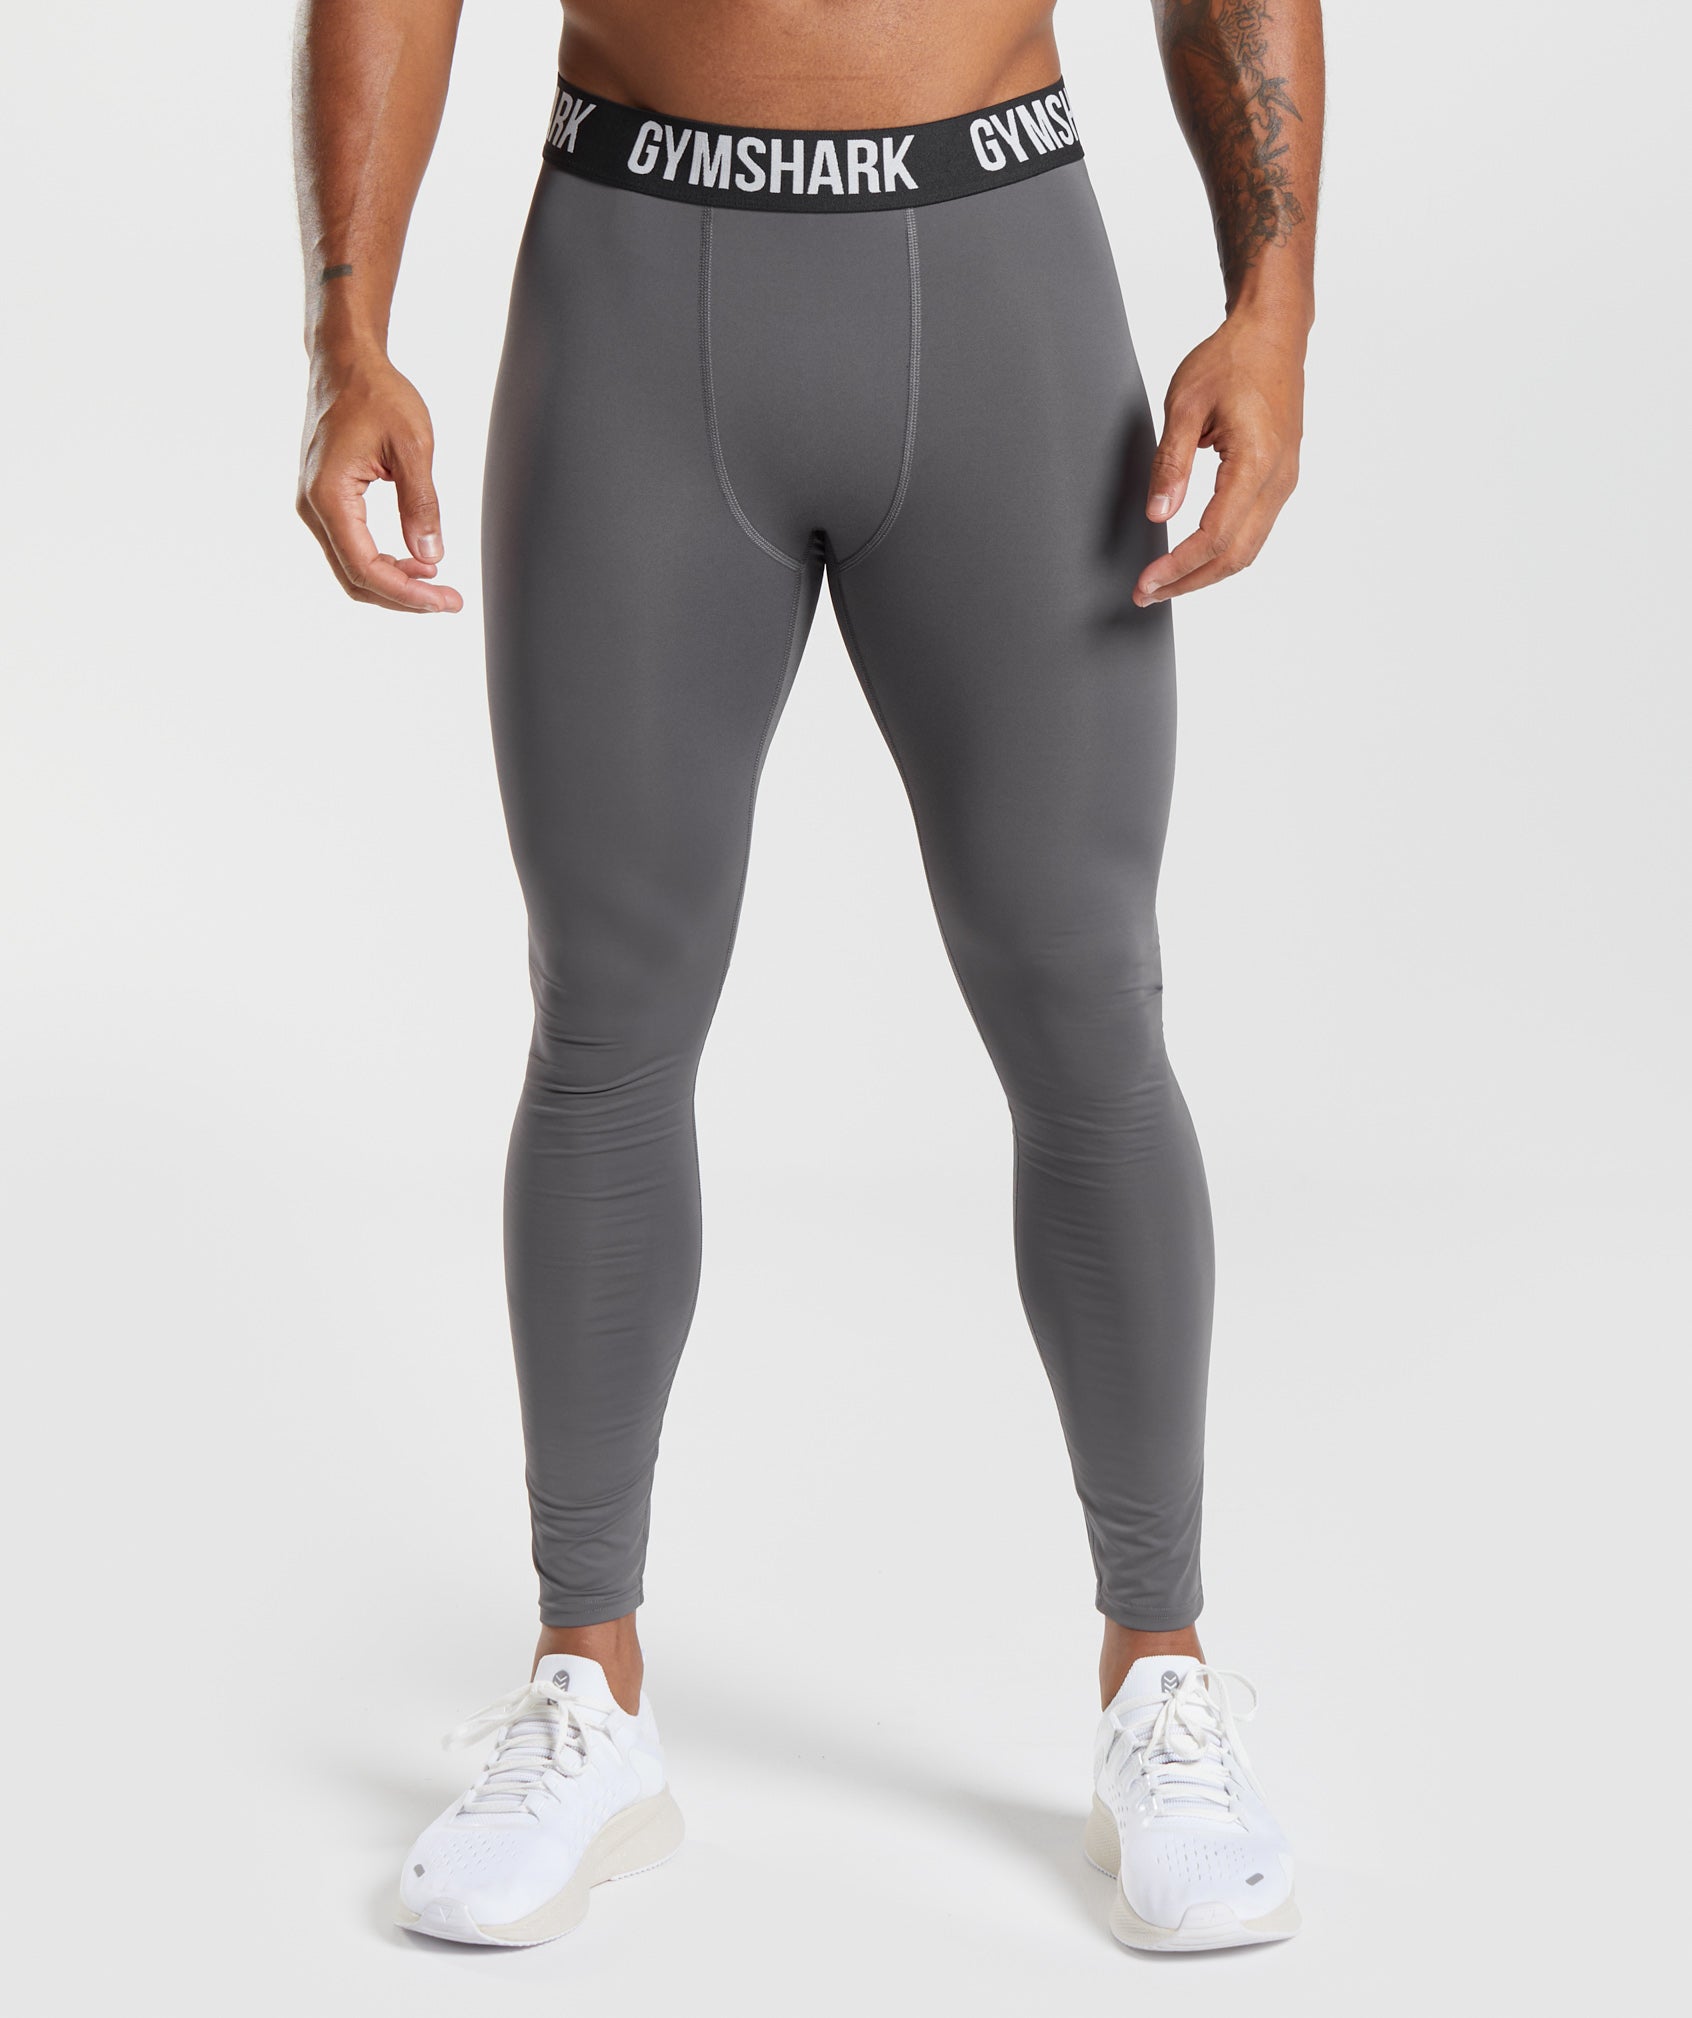 Leggings Gymshark Grey size S International in Polyester - 39576315